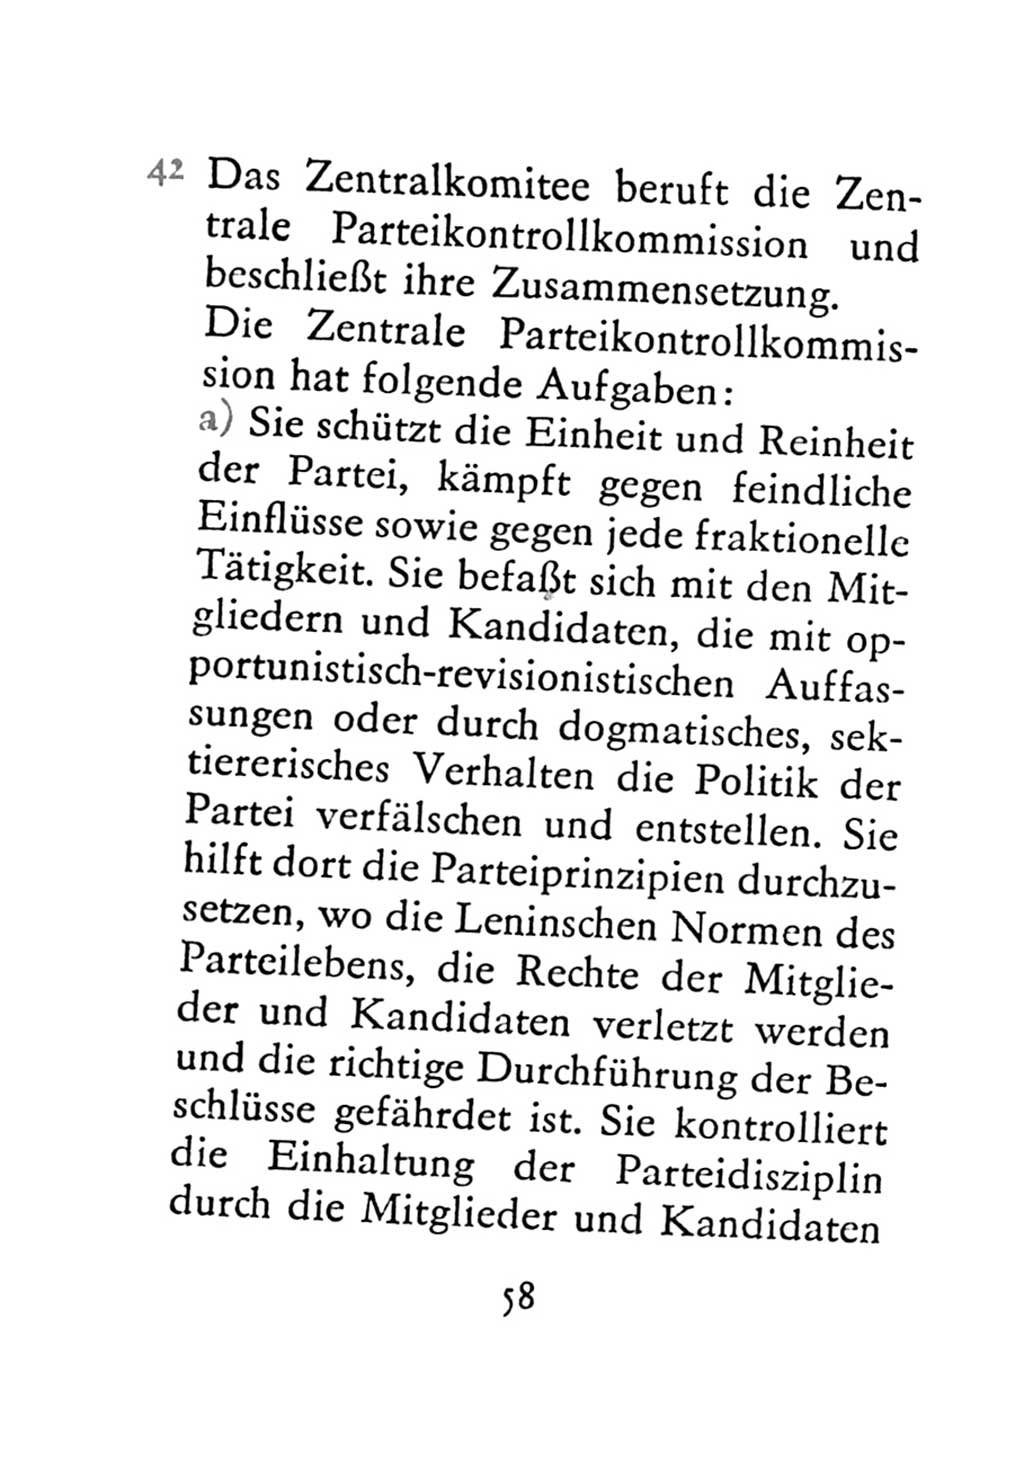 Statut der Sozialistischen Einheitspartei Deutschlands (SED) 1971, Seite 58 (St. SED DDR 1971, S. 58)